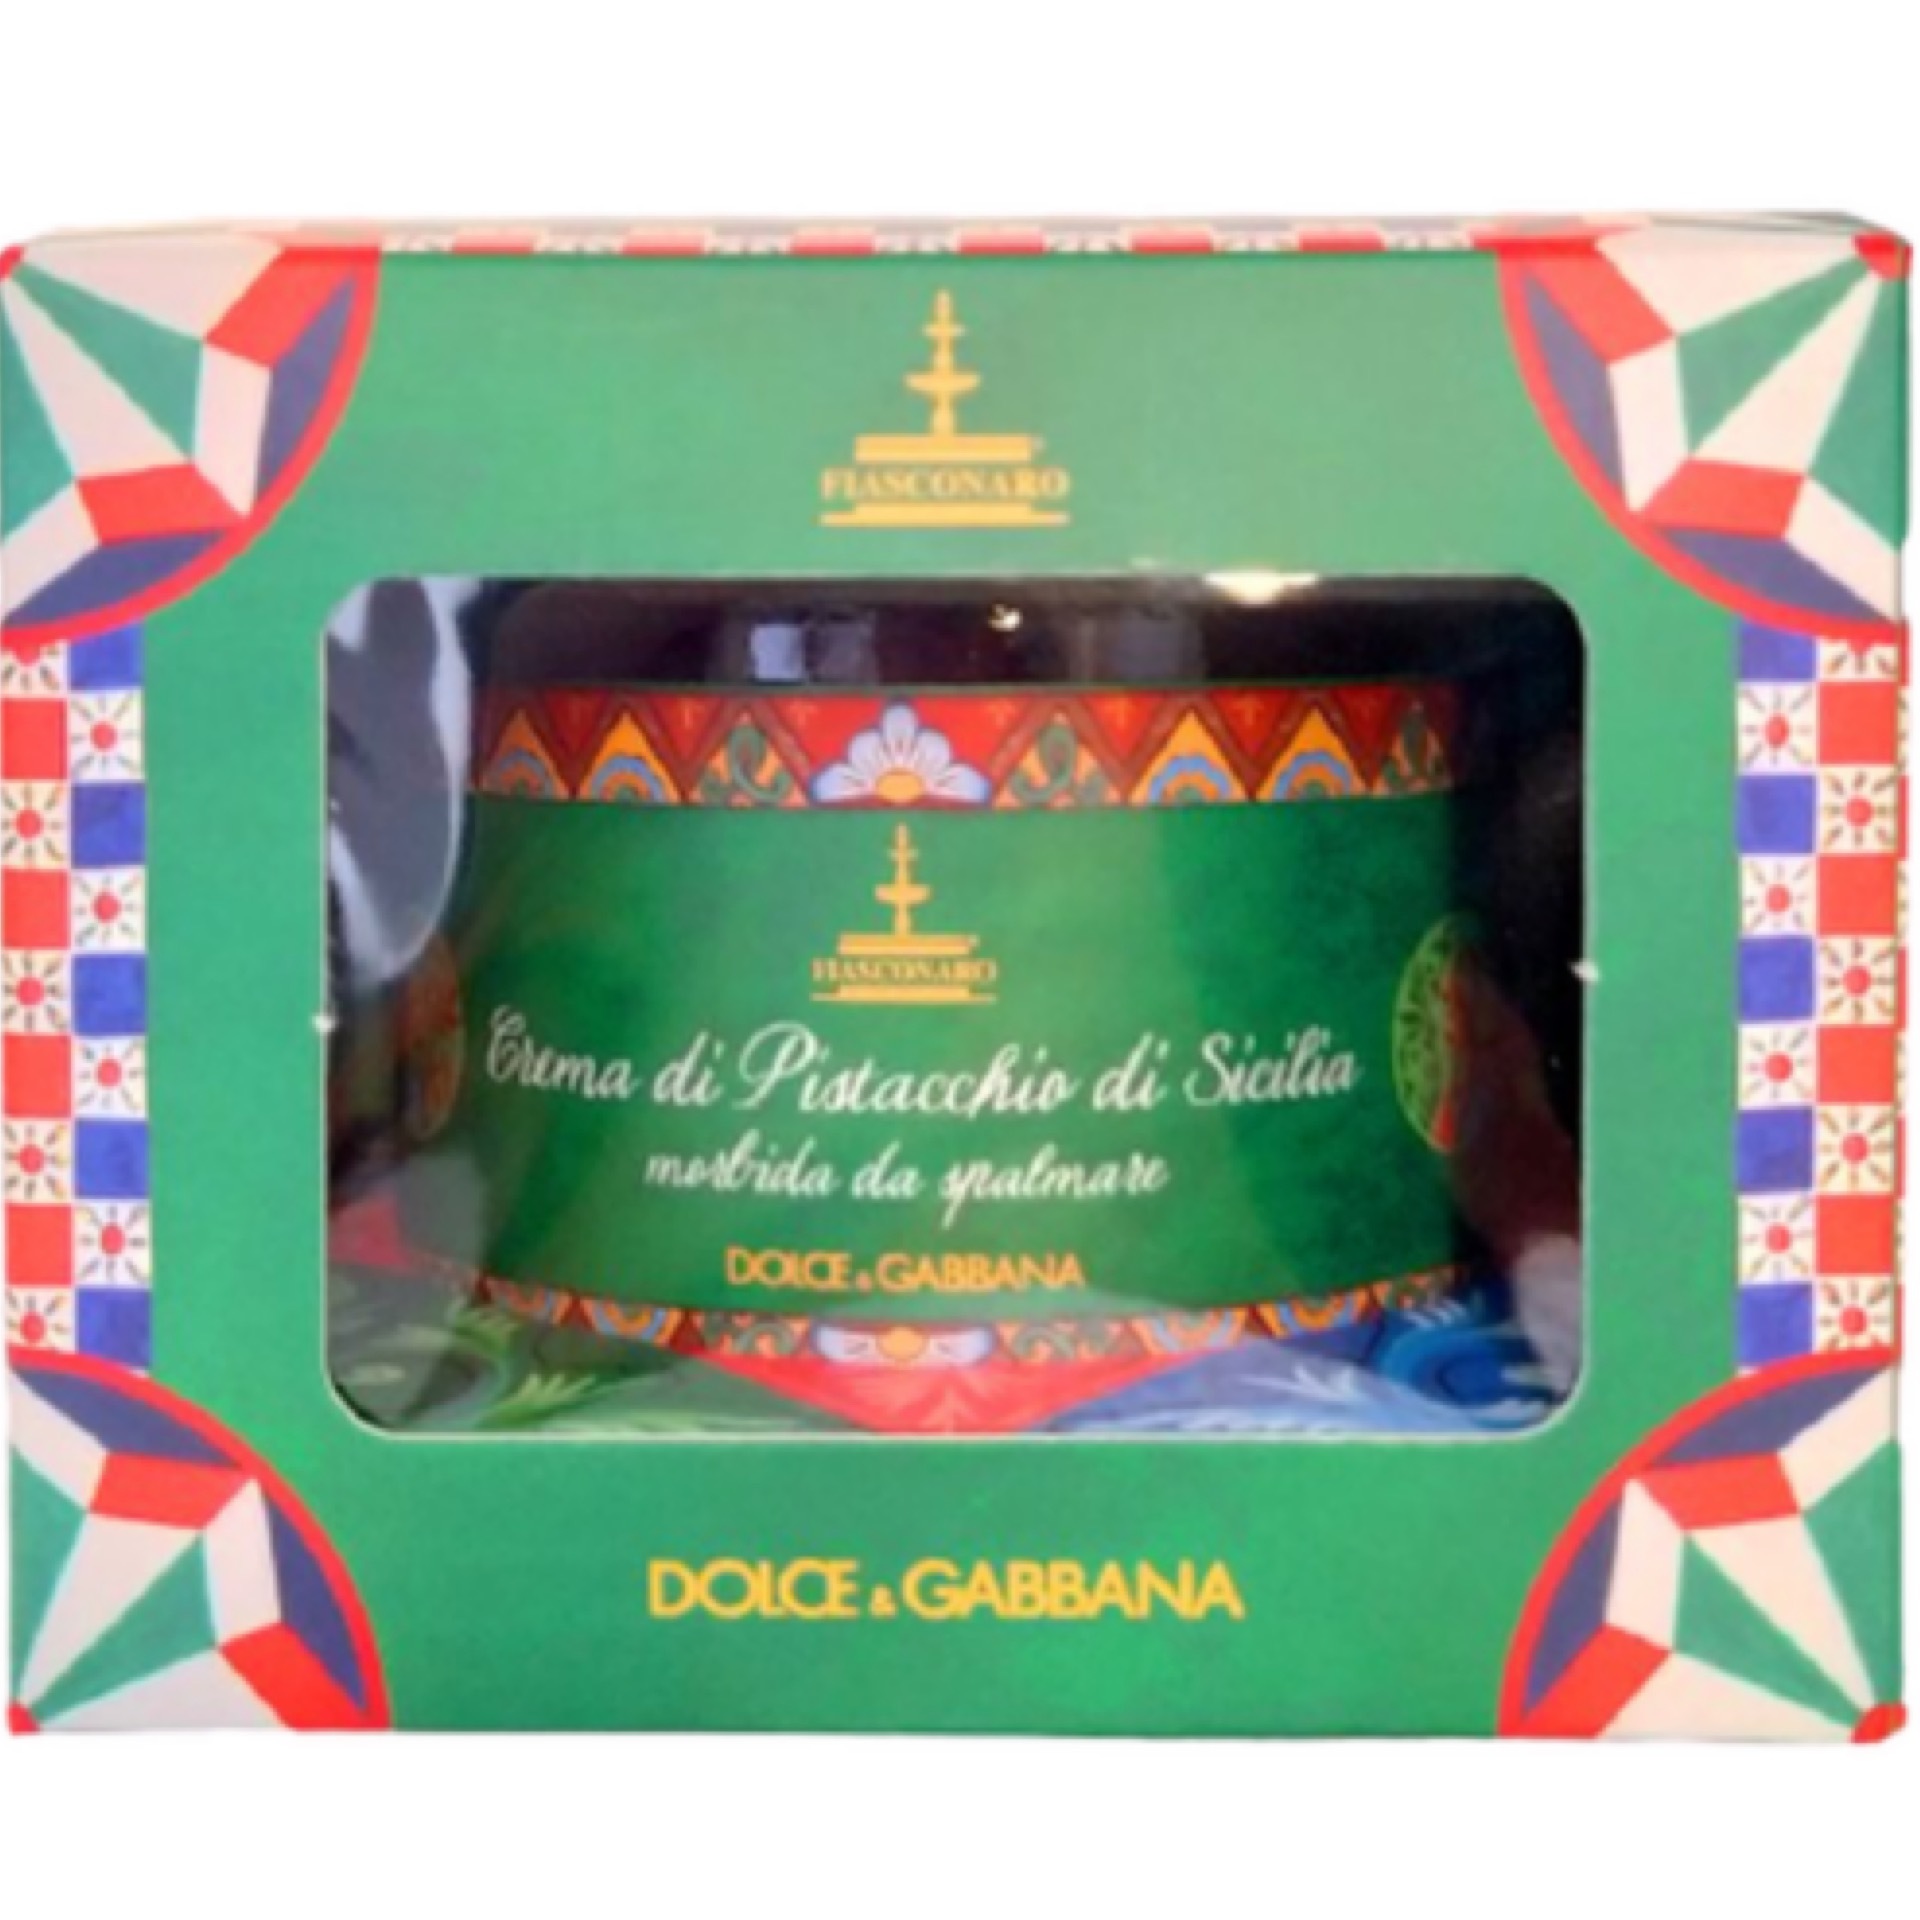 Dolce & Gabbbana Sicilian Pistachio Cream Spread 200g (Includes Dolce ...